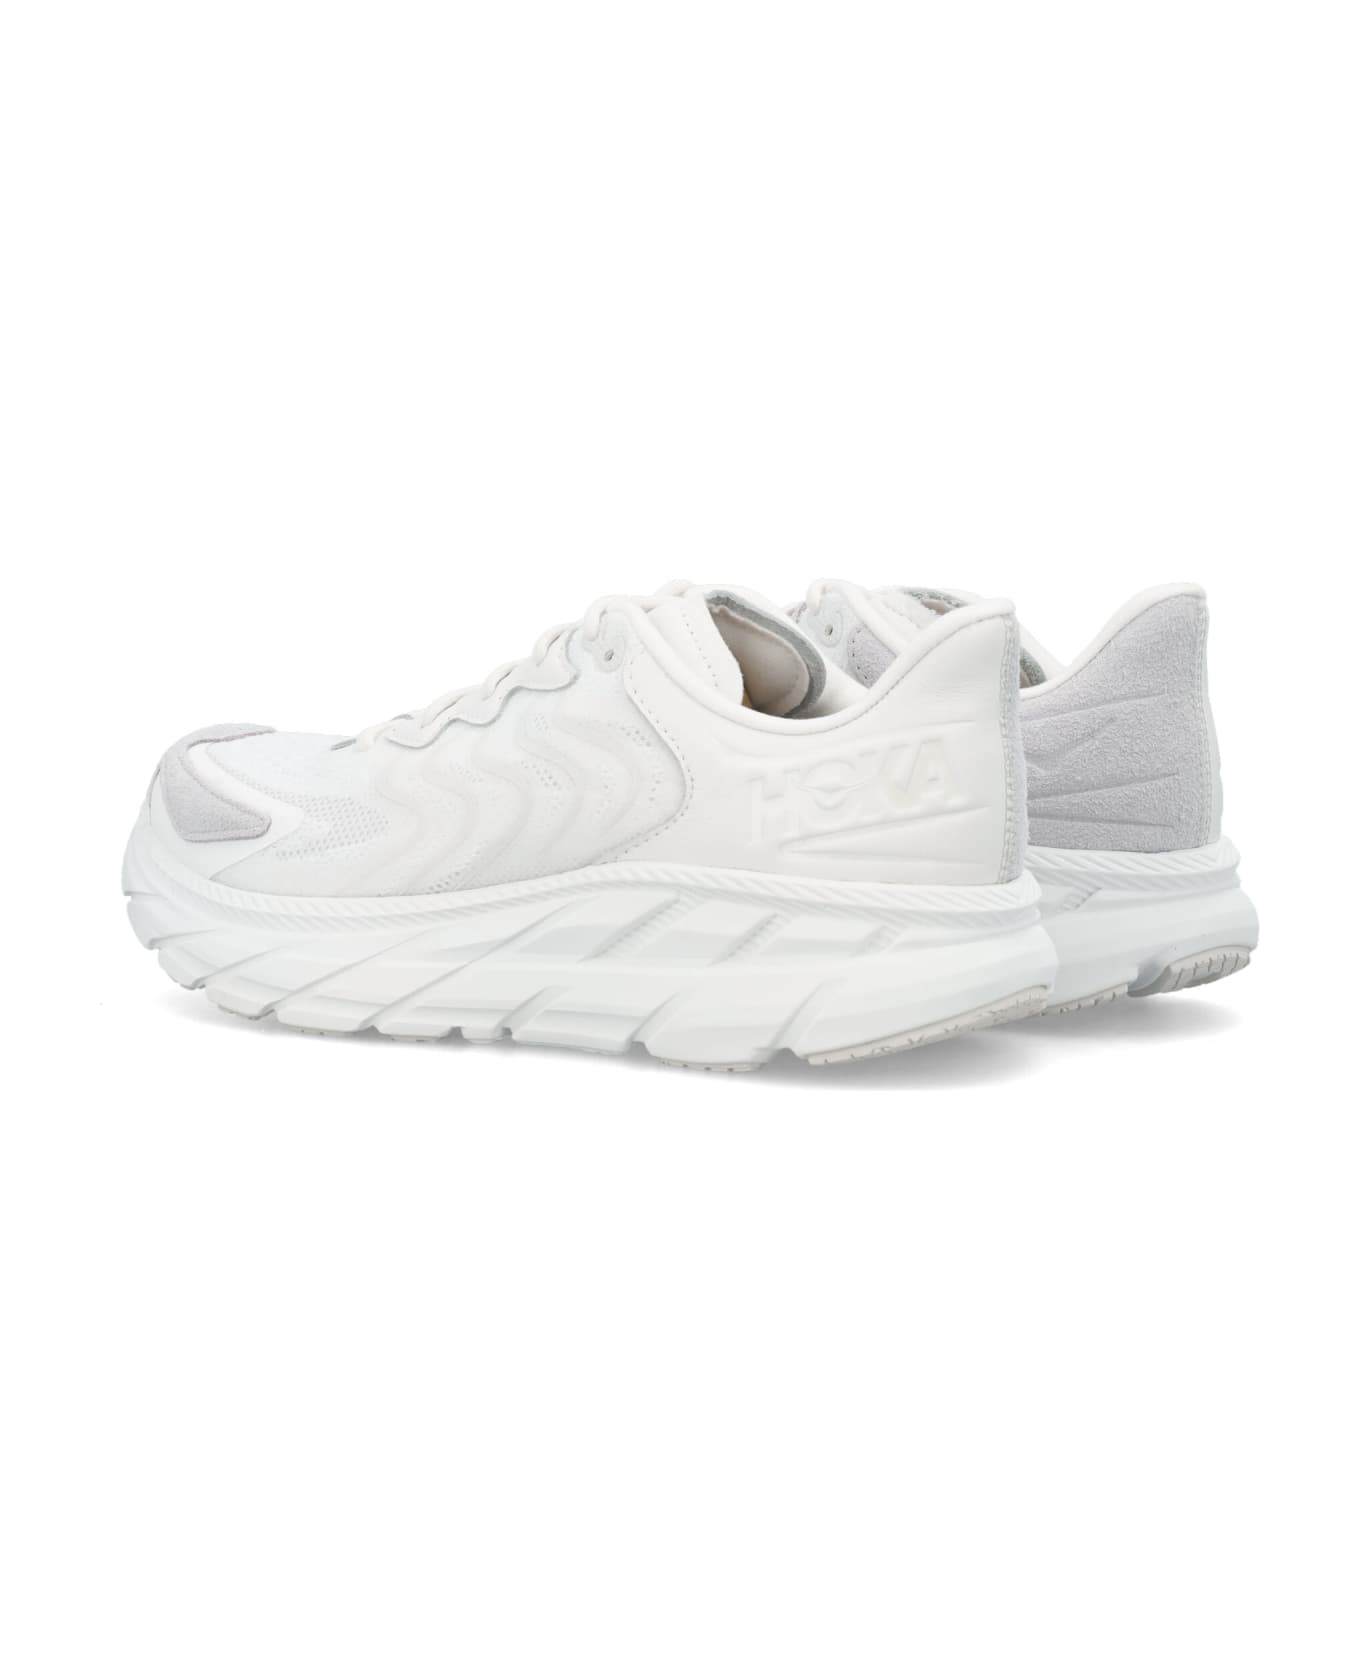 Hoka One One Clifton Ls Sneakers - WHITE